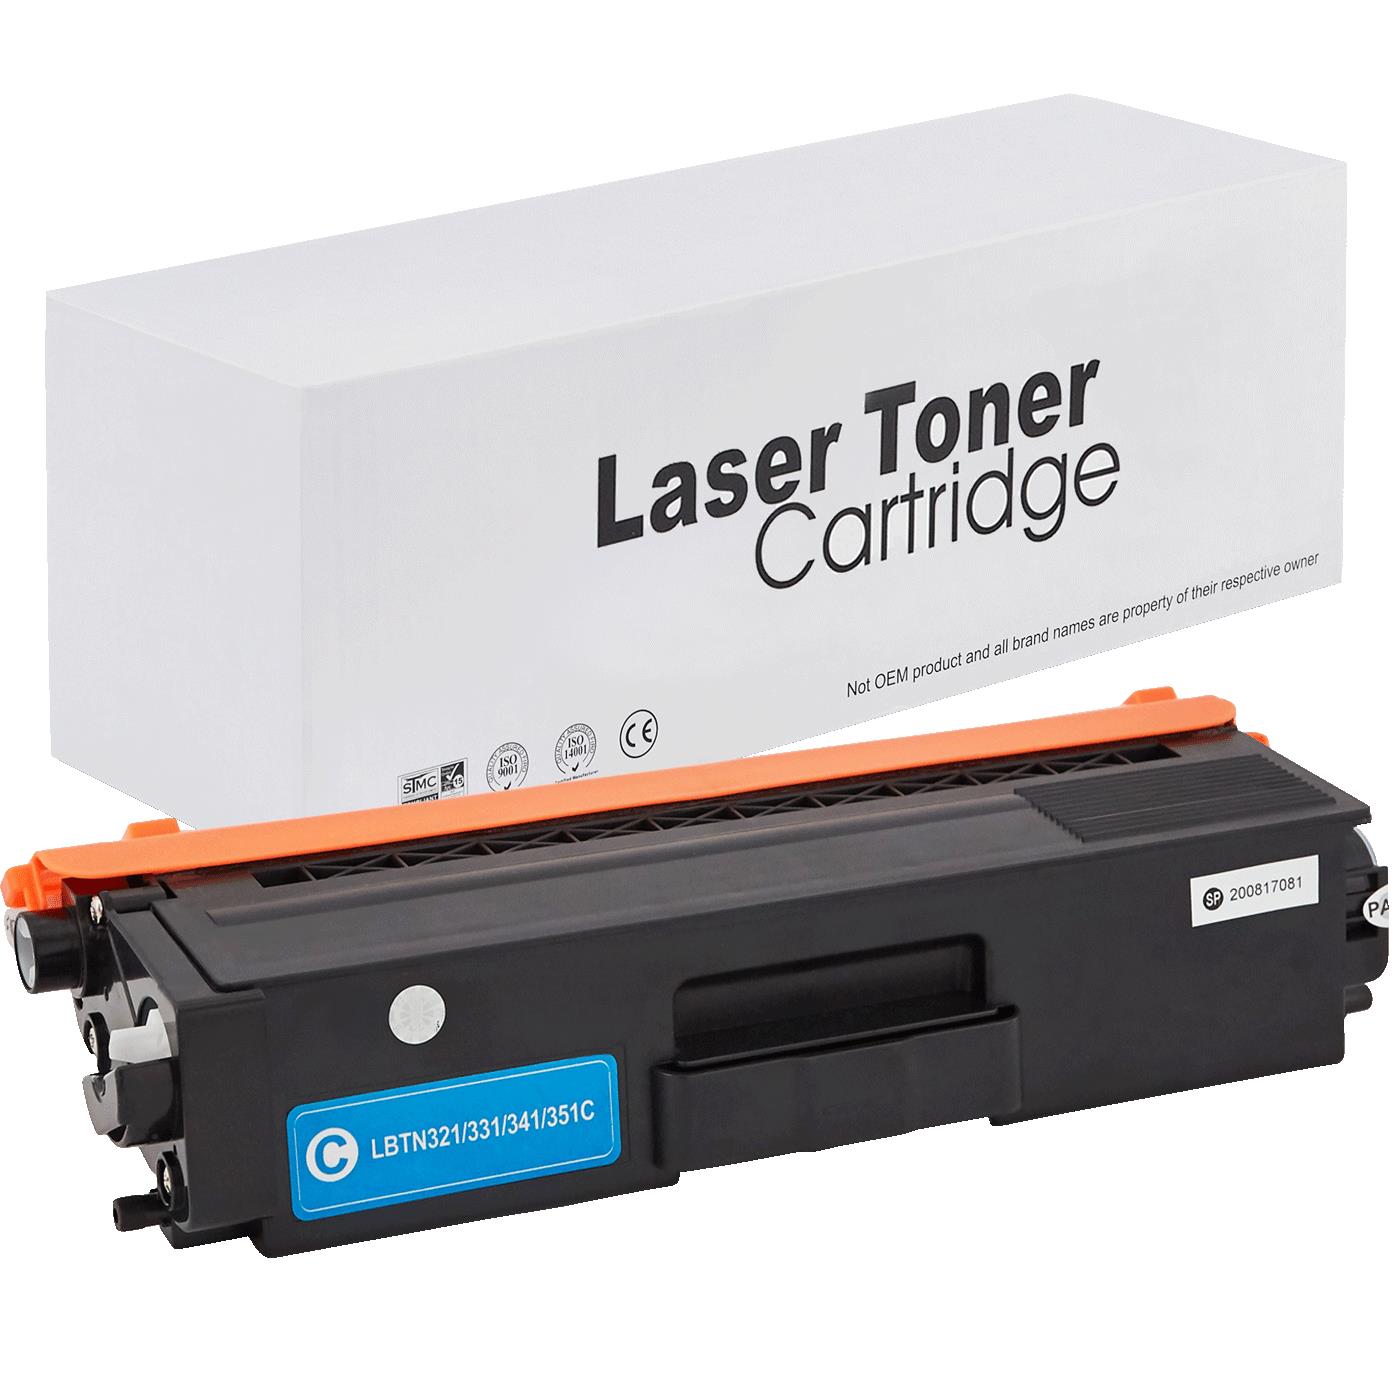 съвместима тонер касета за принтери и печатащи устройства на Brother HL-L 8350 CDWT Toner BR-321C | TN321C. Ниски цени, прецизно изпълнение, високо качество.